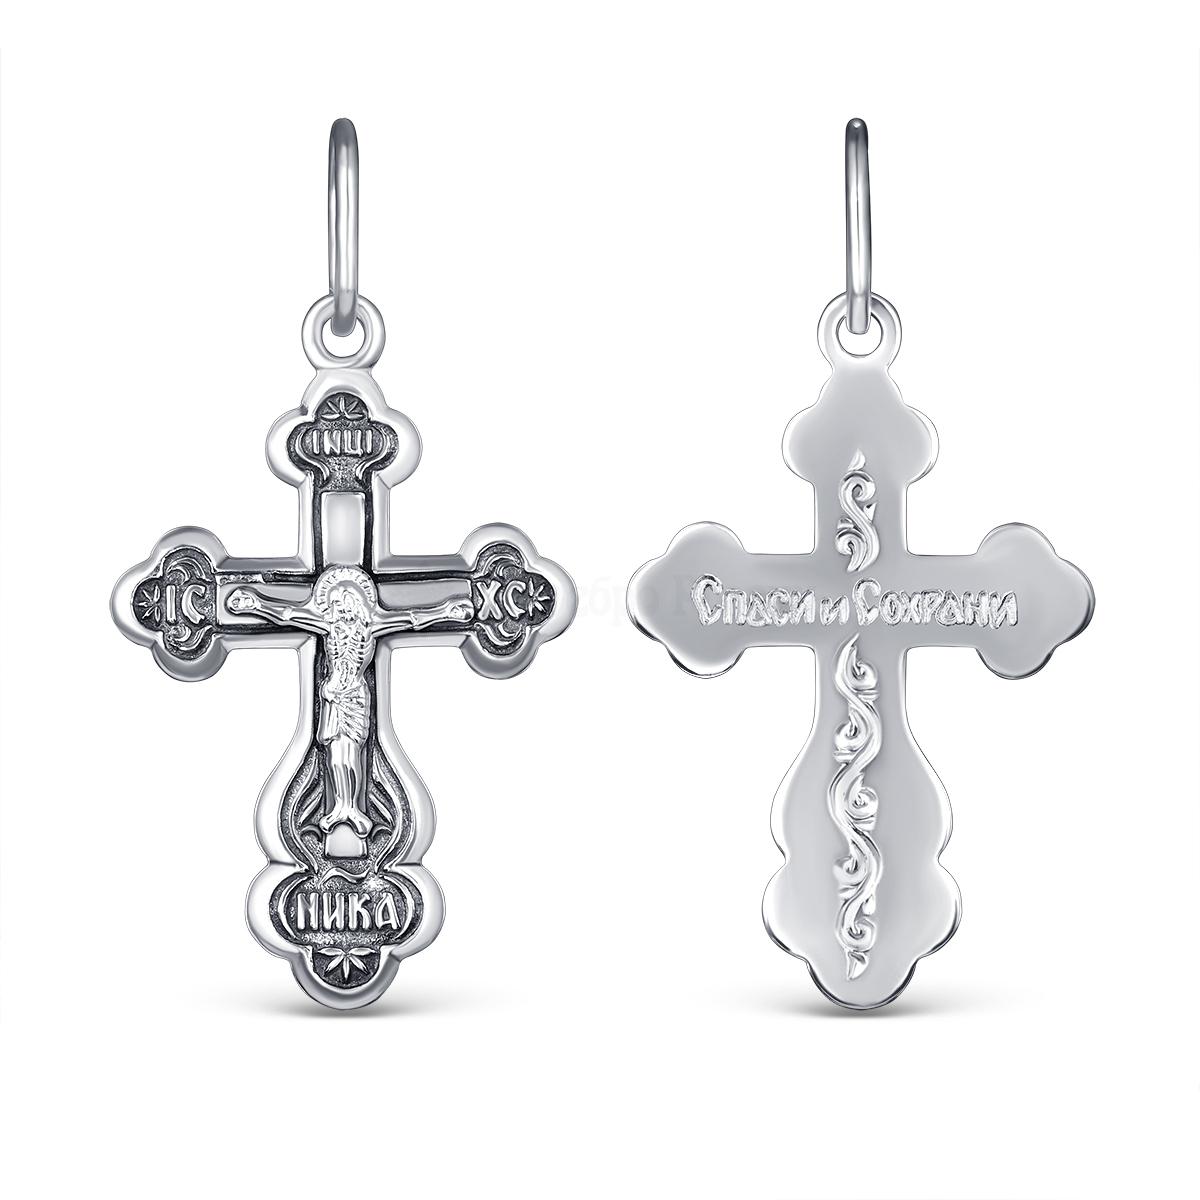 Крест православный из чернёного серебра - Спаси и сохрани 3,1 см 1-107-3 1-107-3